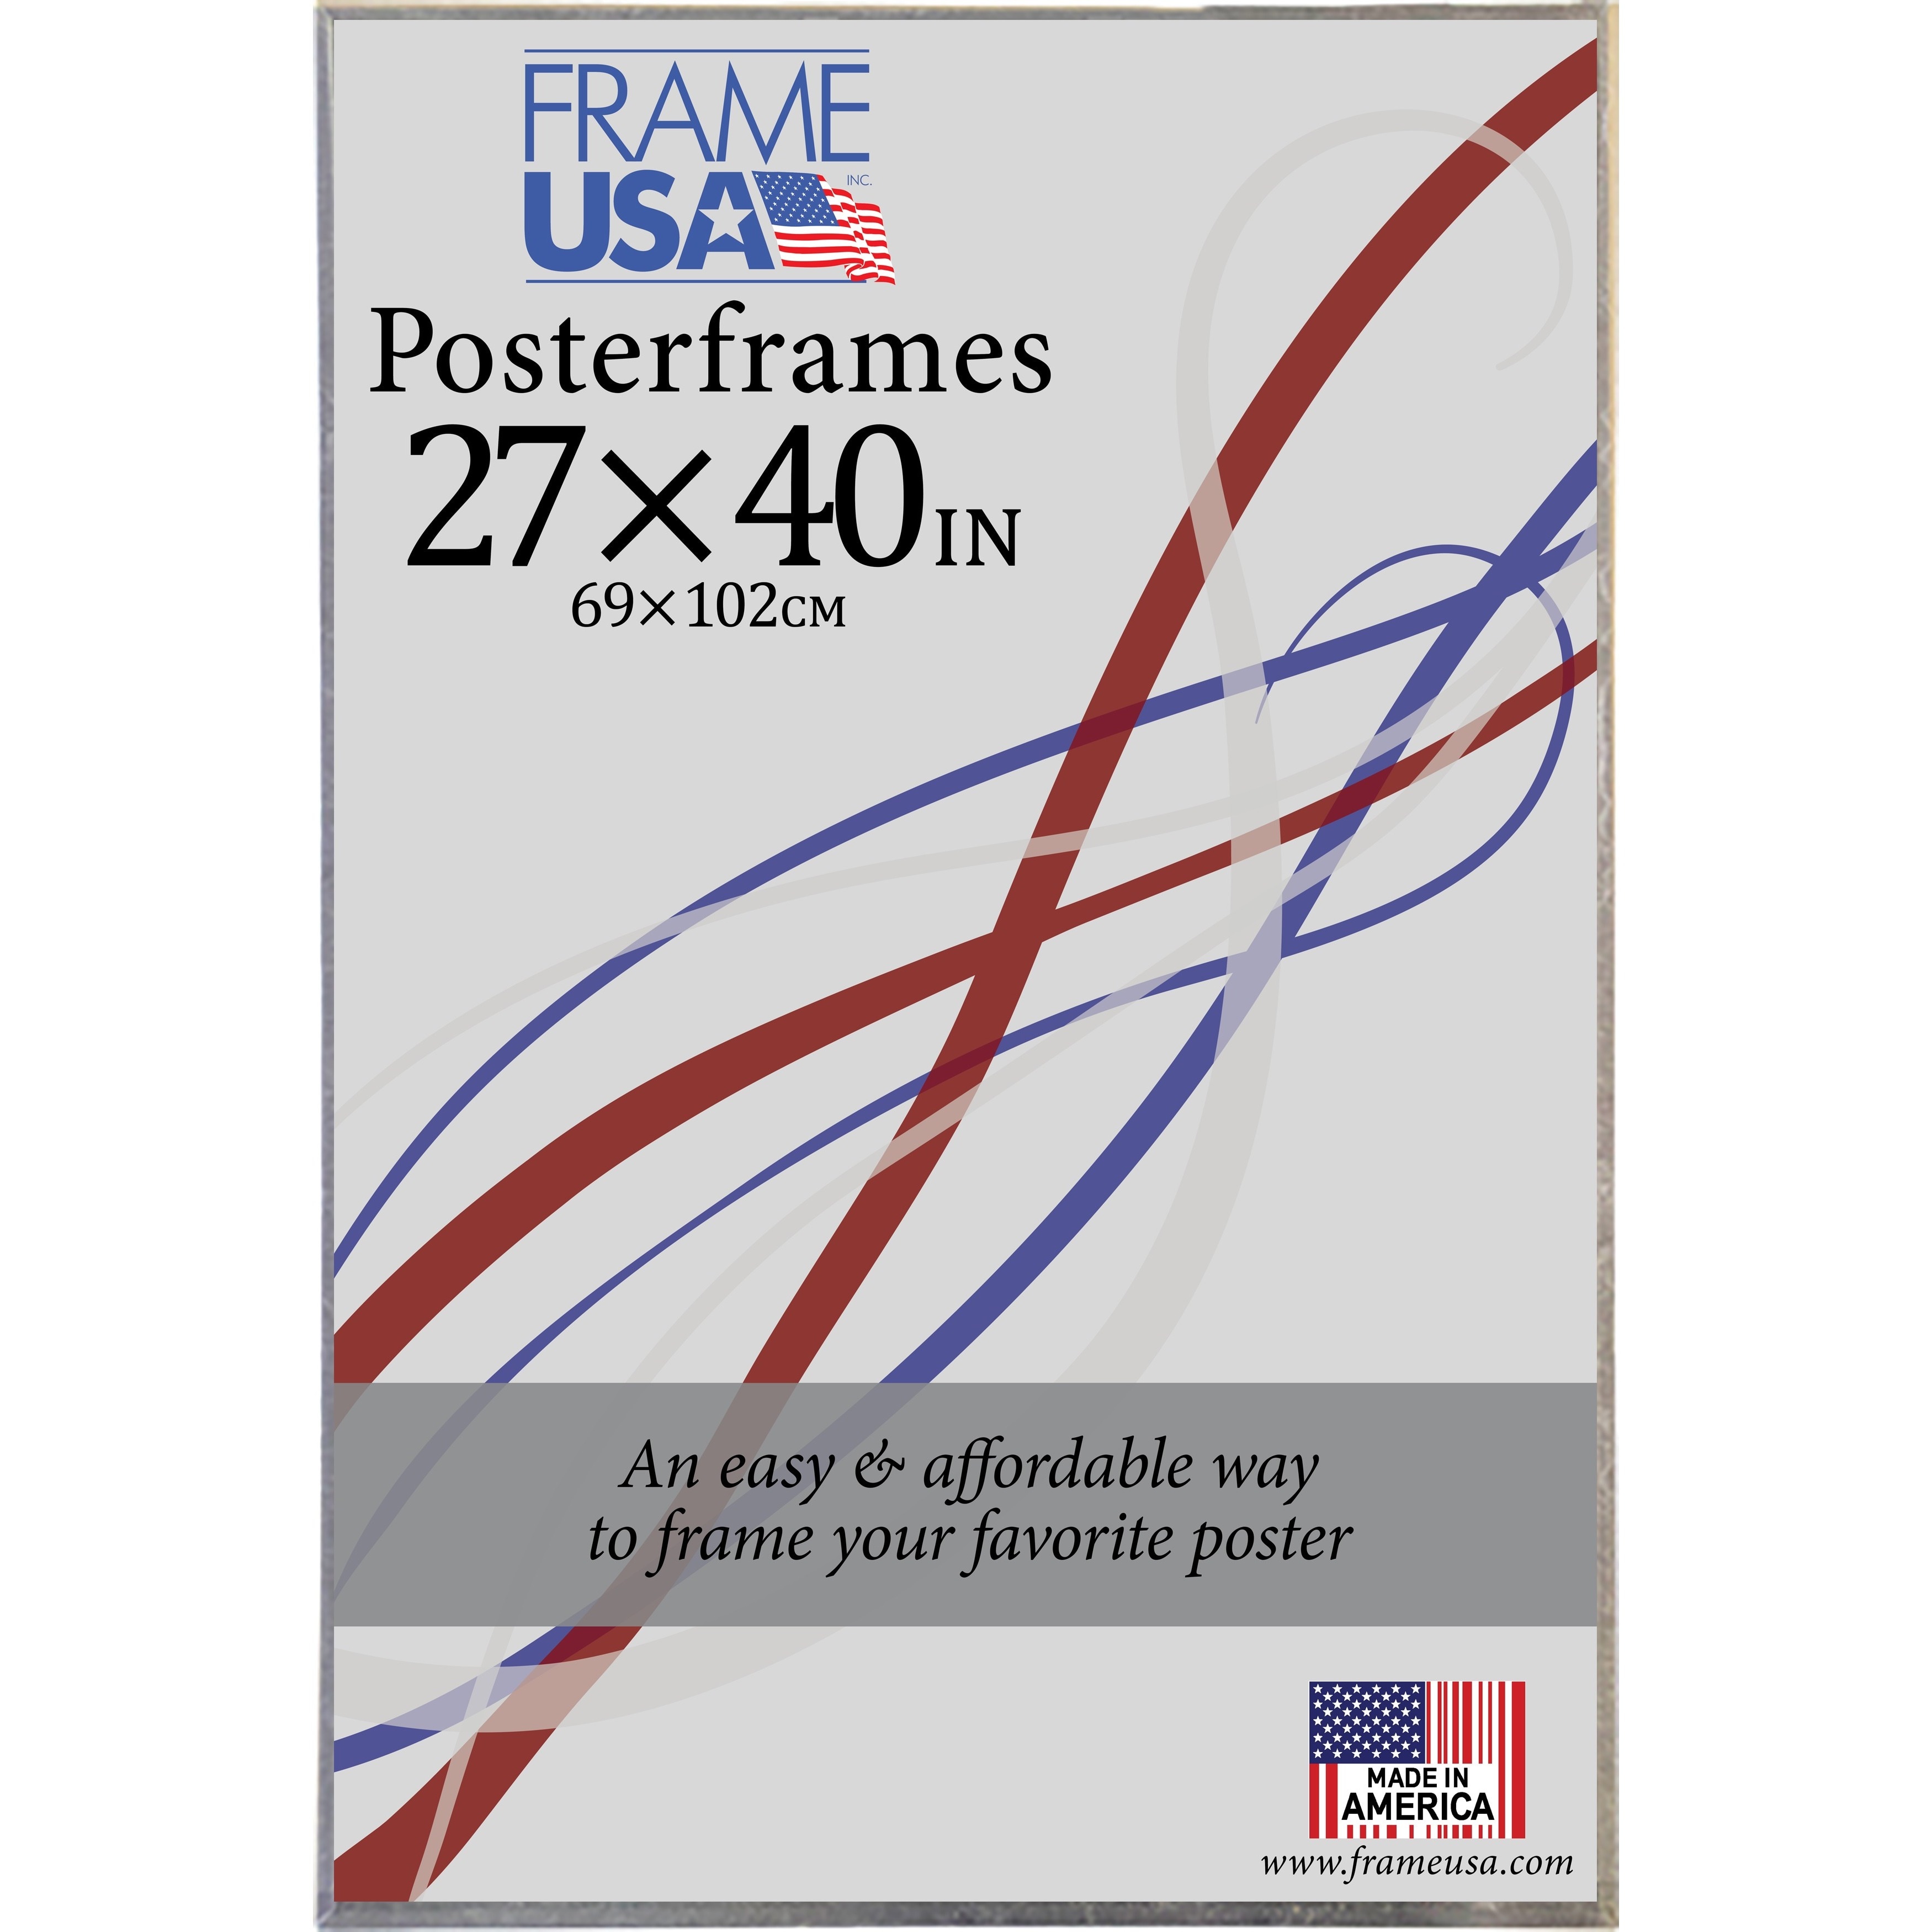 40×27 poster frame